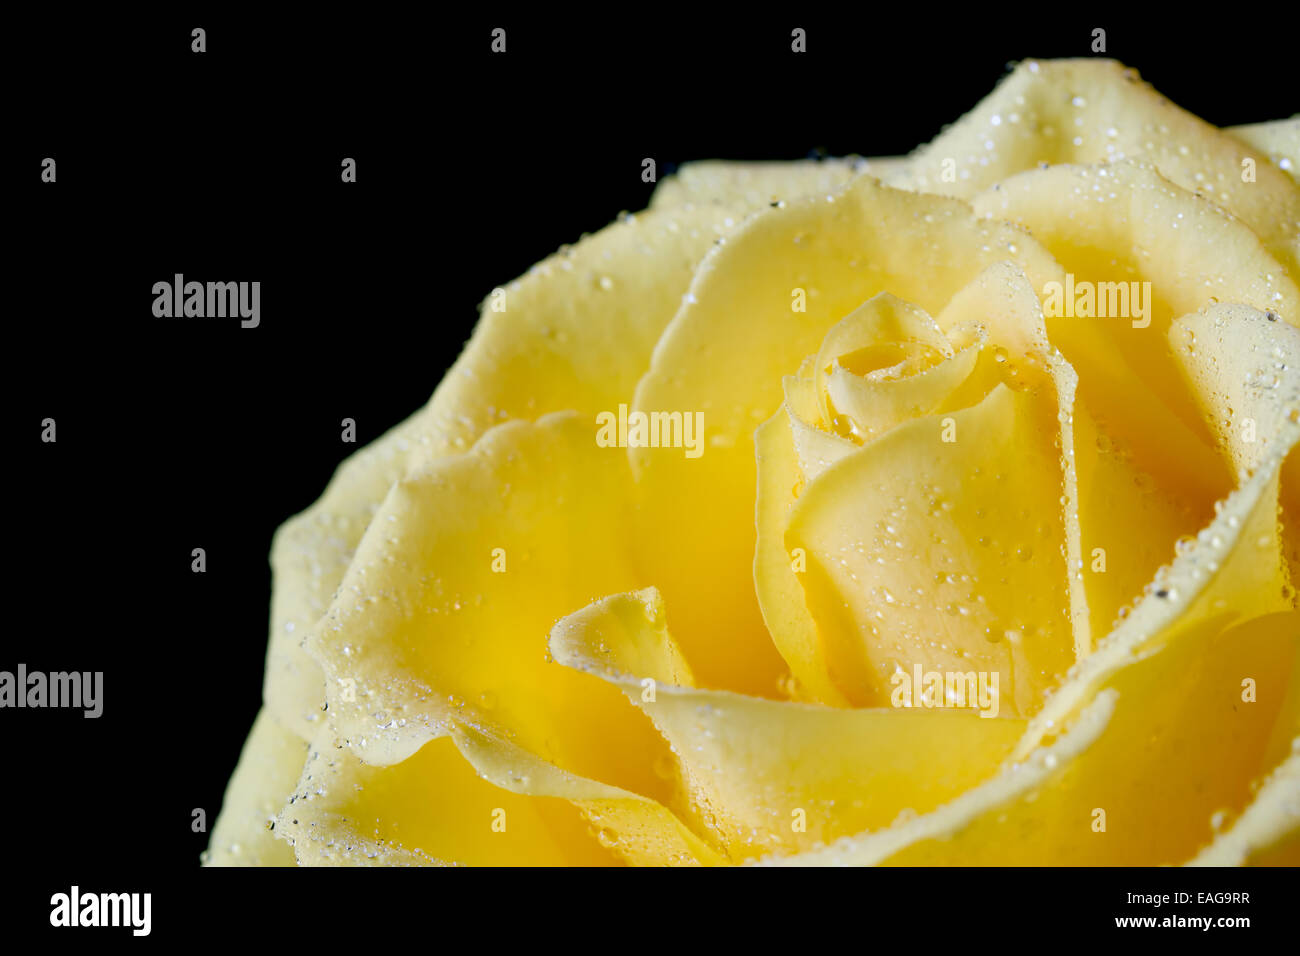 Belle rose jaune sur fond noir Banque D'Images